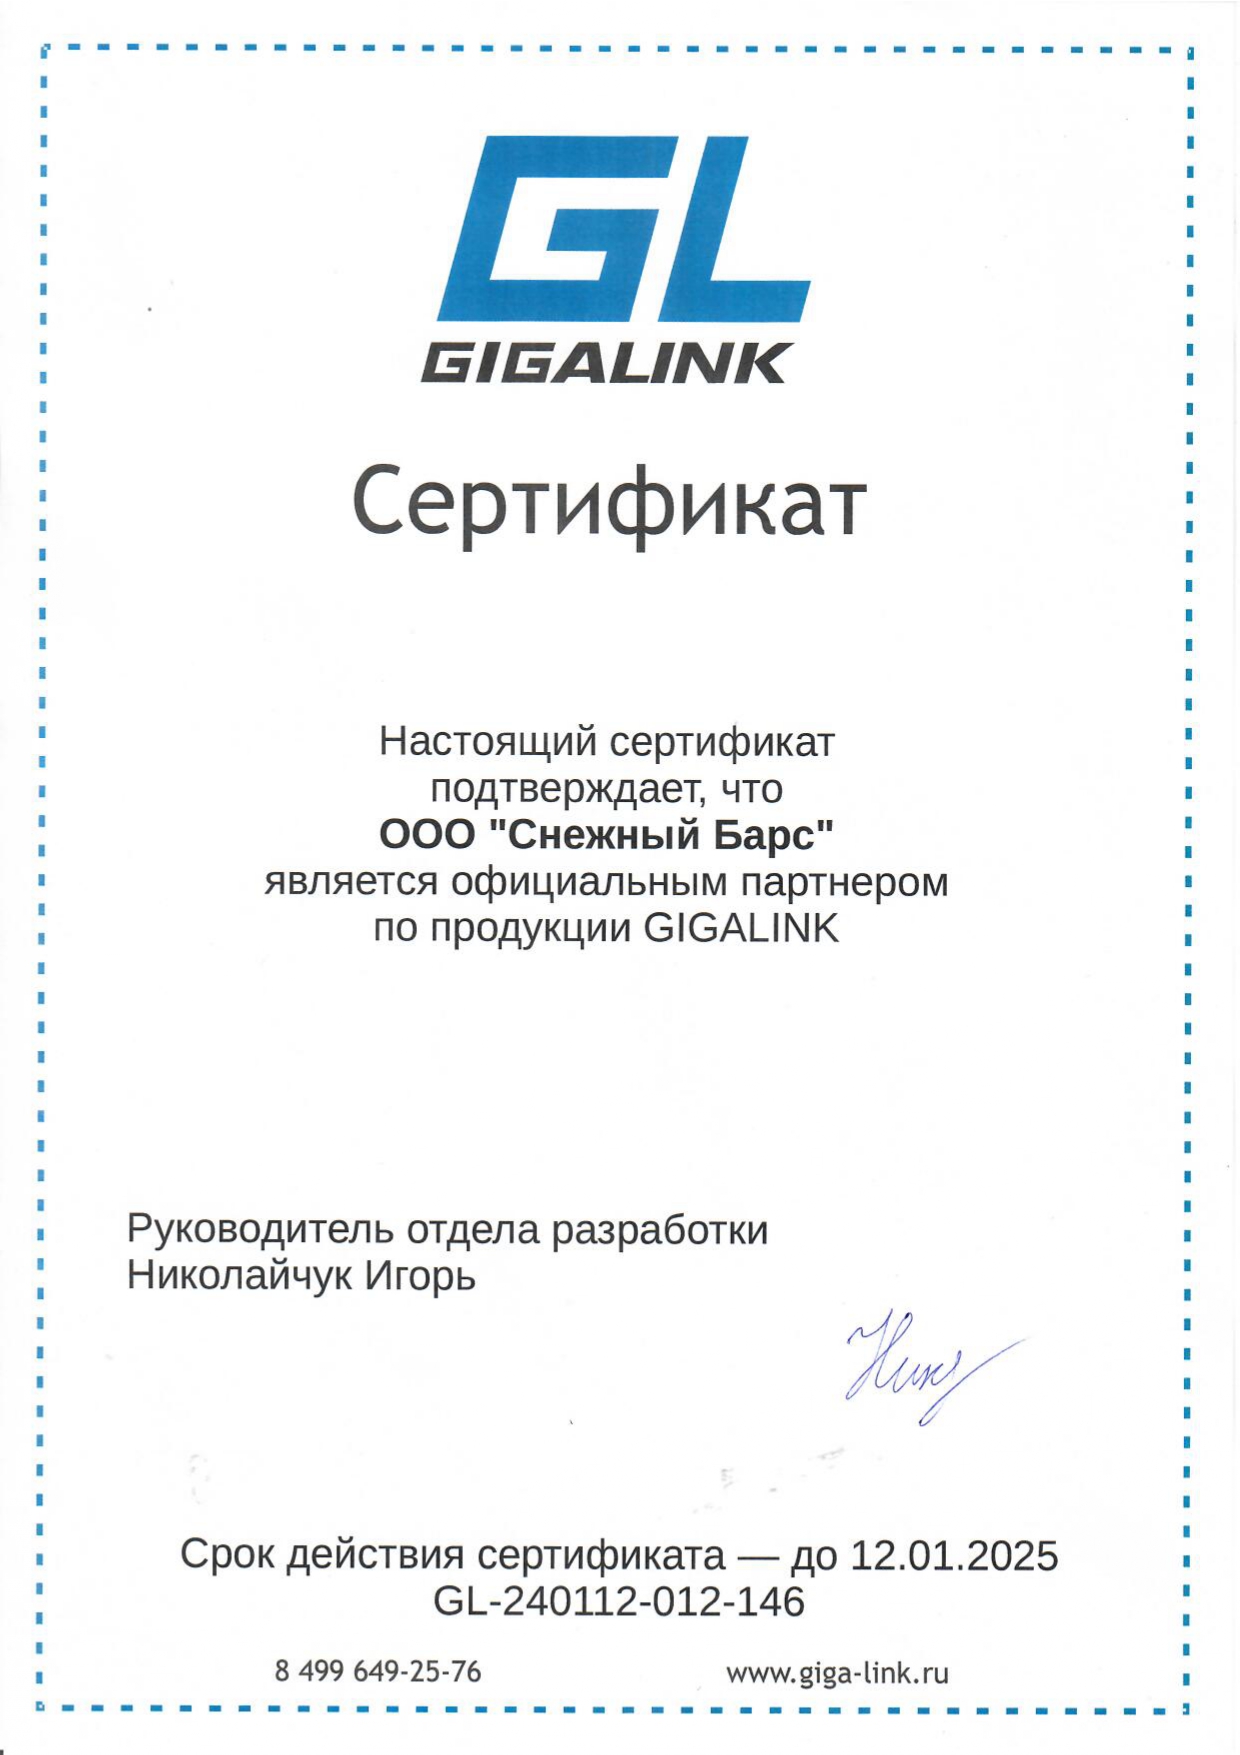 Сертификат официального партнера по продукции Gigalink